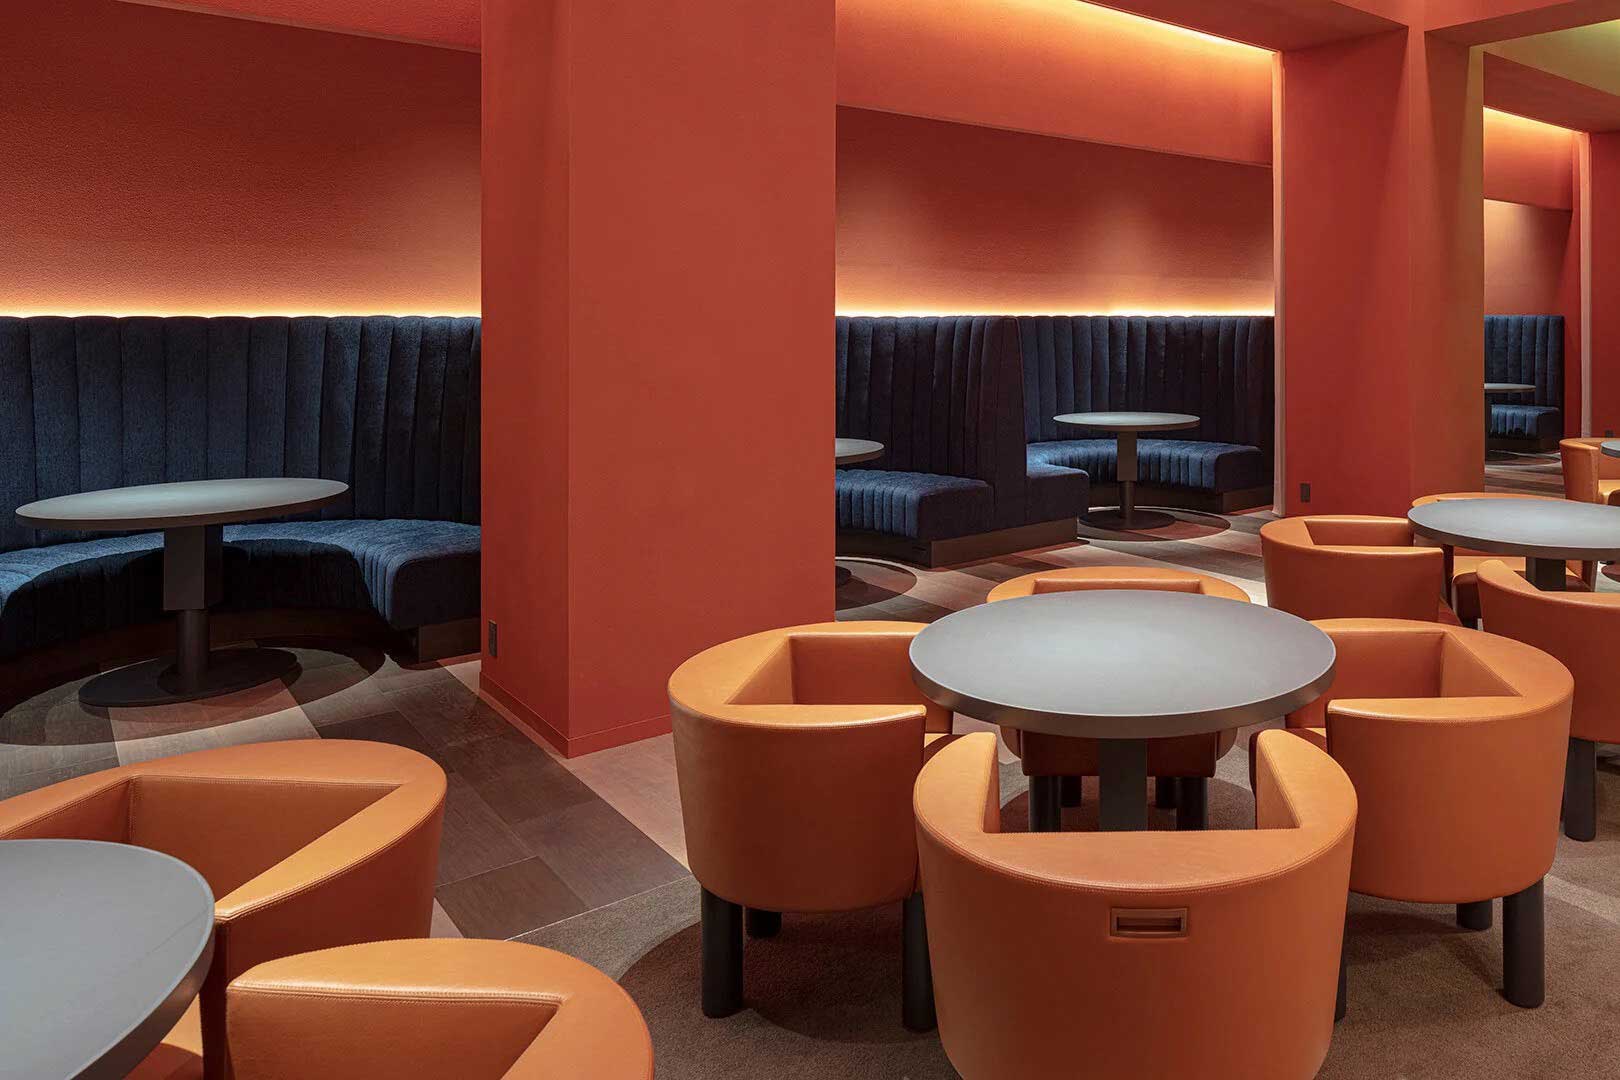 هتلی با ترکیب معماری ایتالیایی و بازسازی ژاپنی (+عکس)